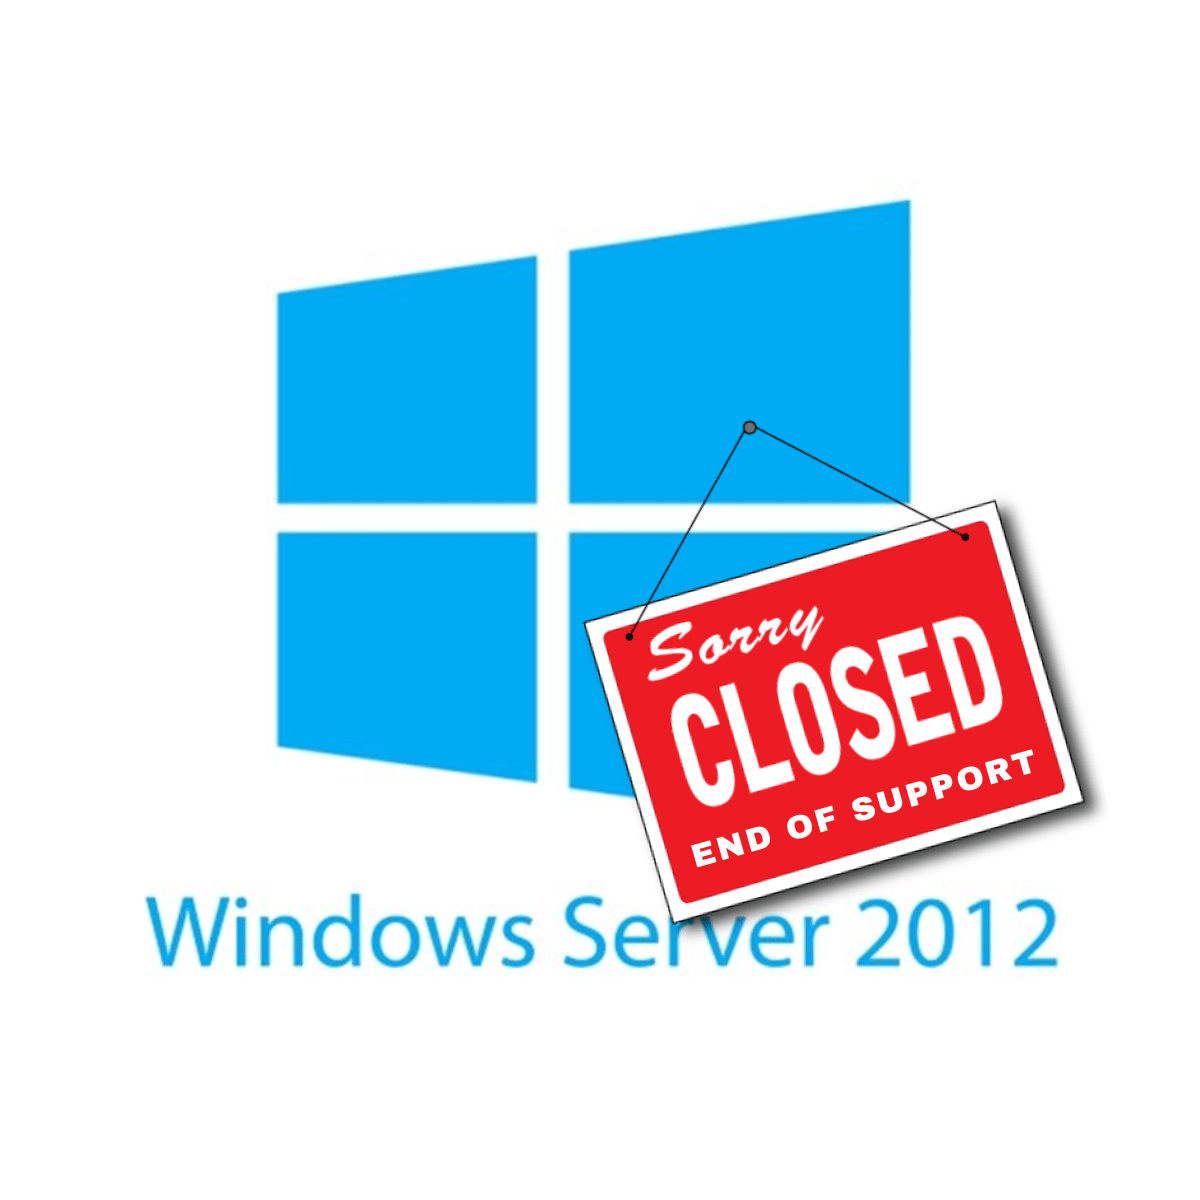 Il logo di Microsoft Windows Server 2012 con appeso il cartello "Closed - End of support"